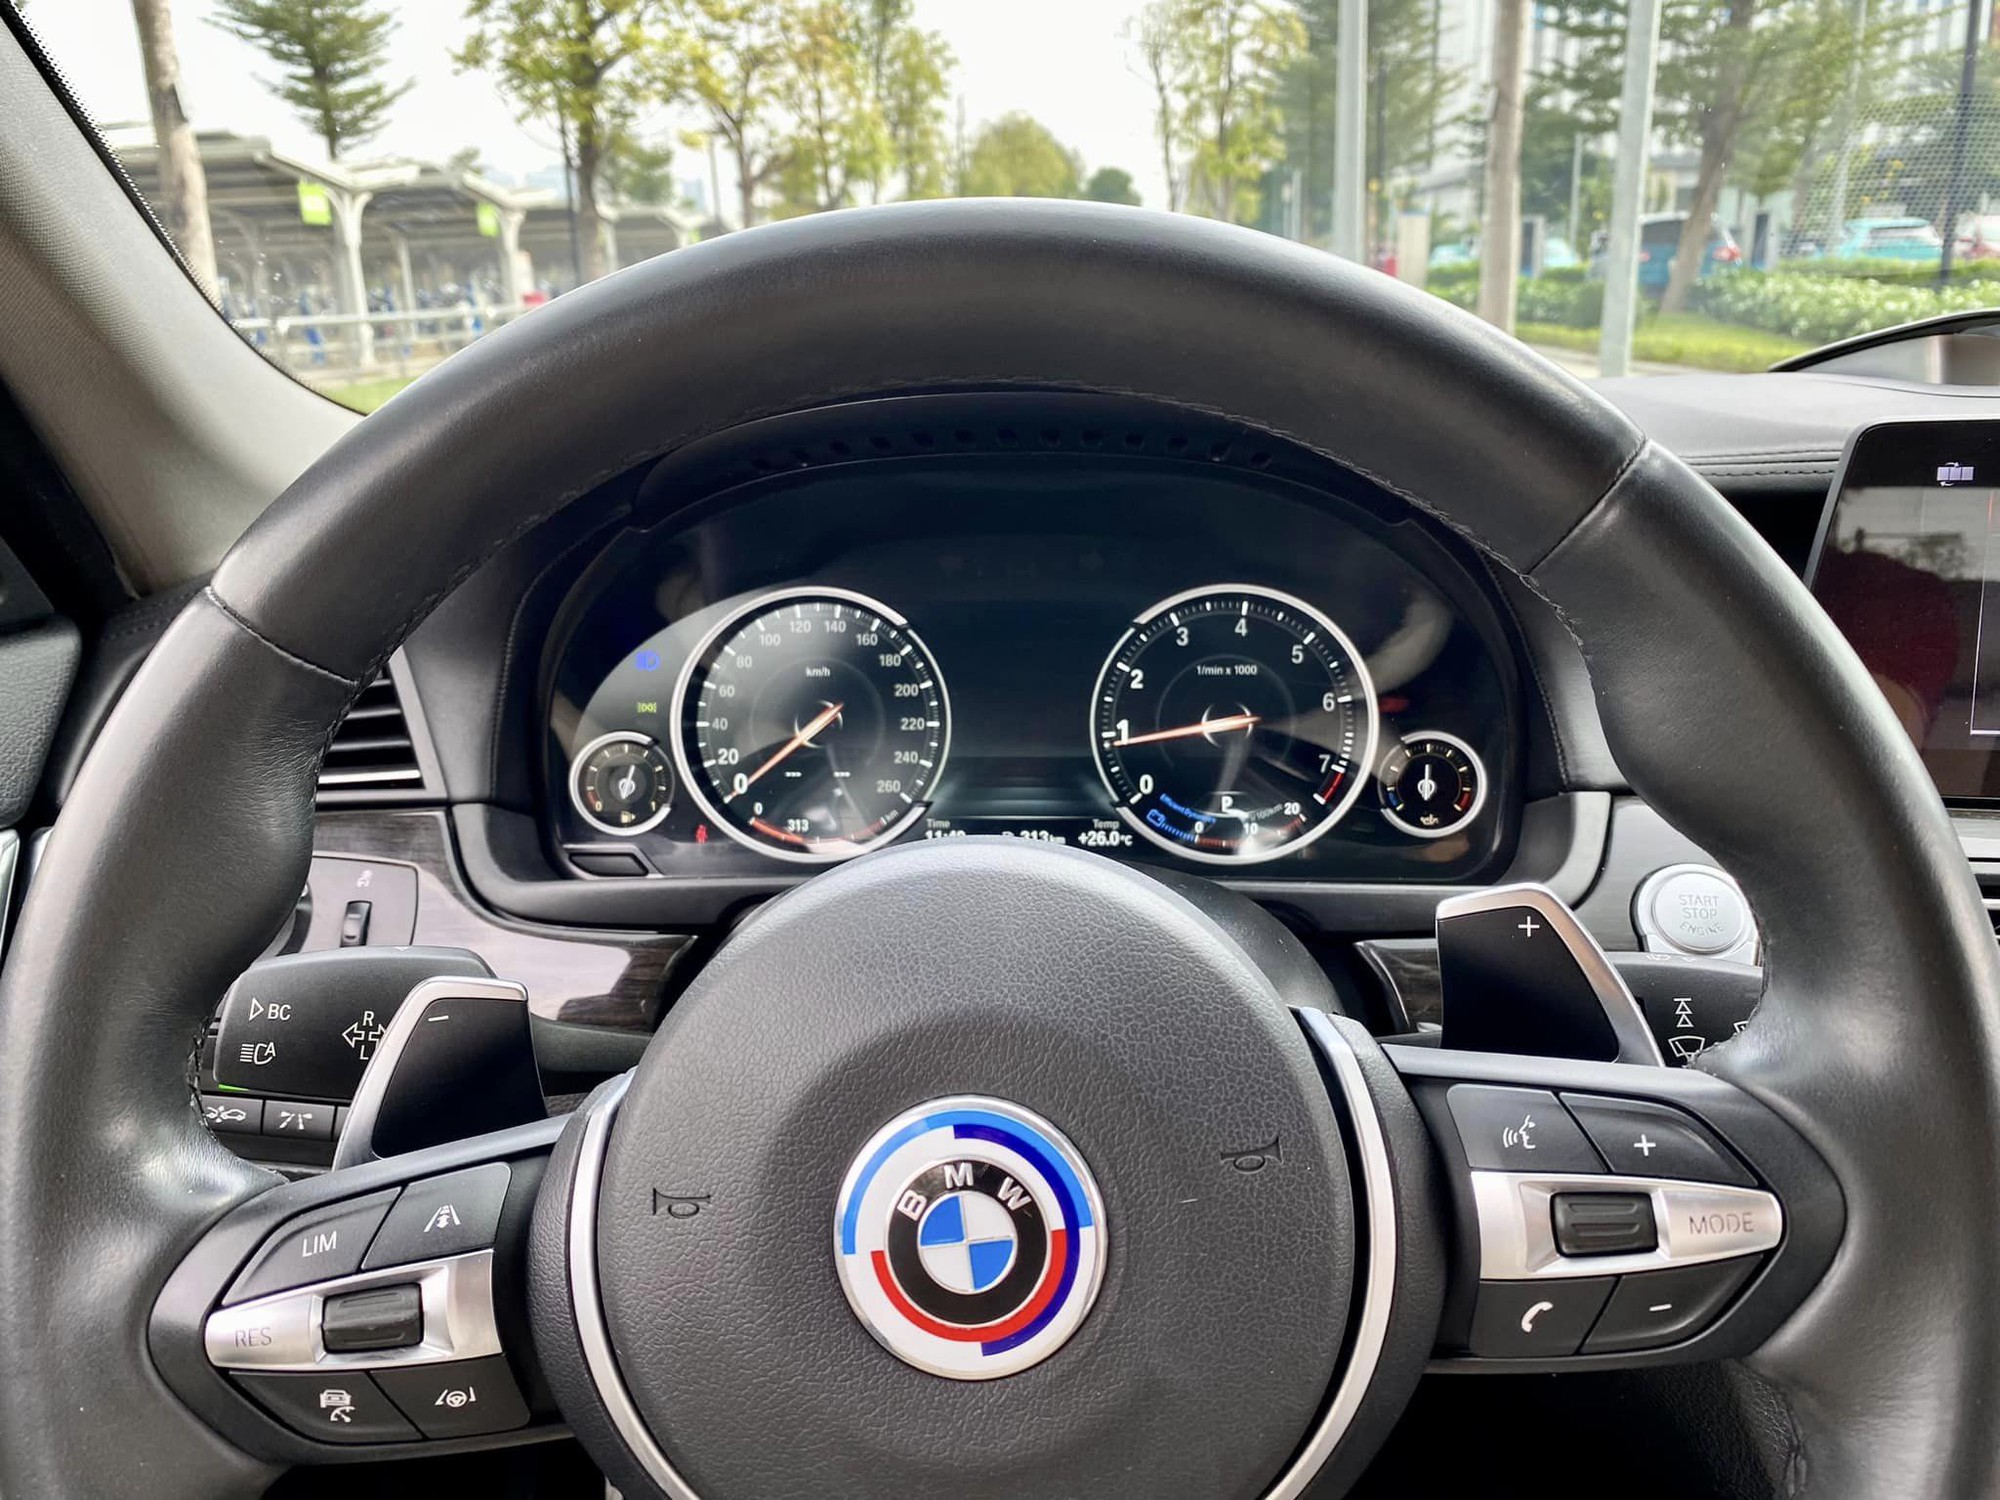 BMW 520i chạy 70.000 km rao bán chưa tới 1 tỷ: Riêng tiền độ đã 1,1 tỷ, nhìn bên ngoài khó biết đây là xe đời sâu- Ảnh 9.